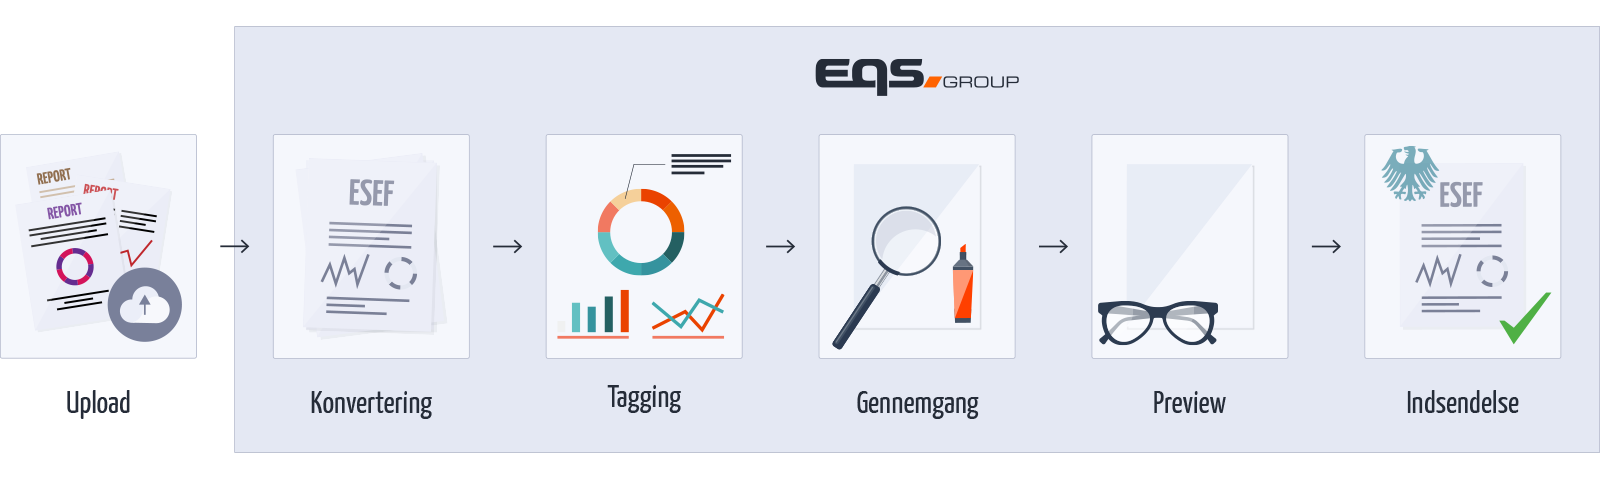 EQS Group ESEF process Danish